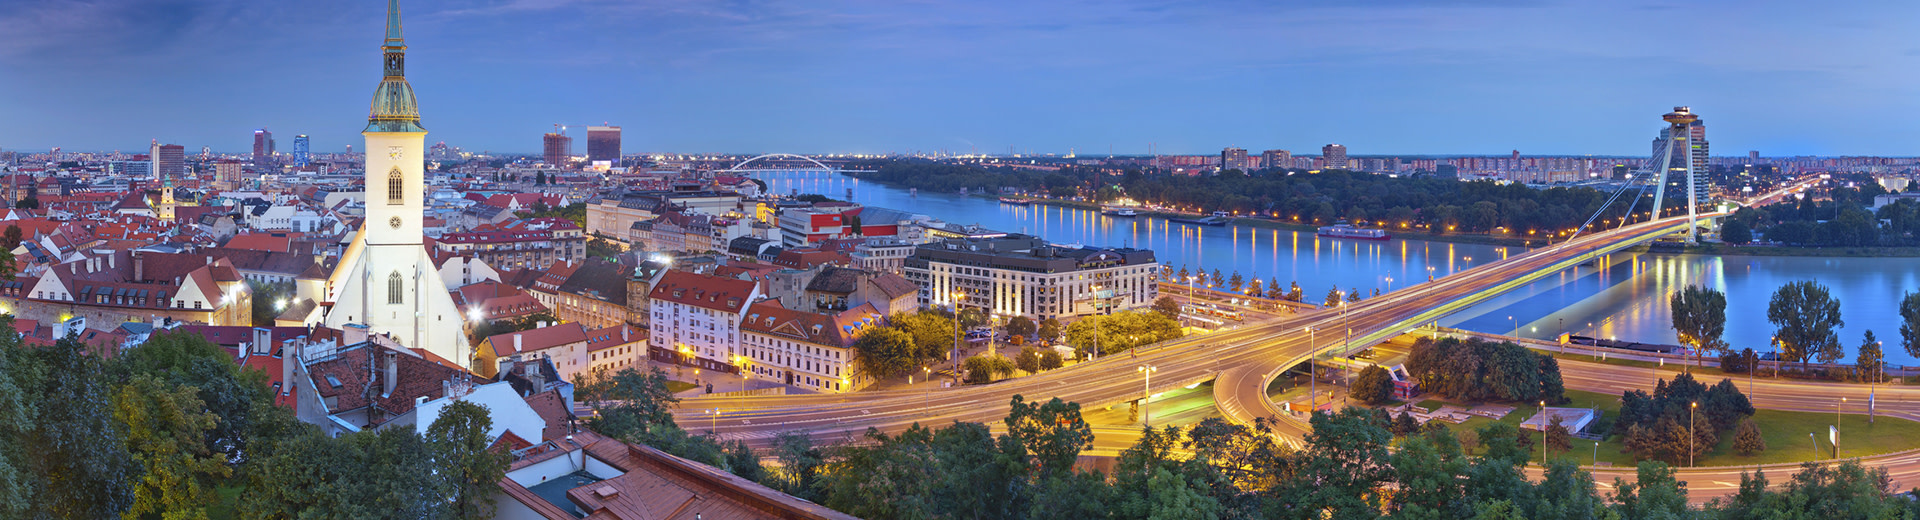 Bratislava, con edificios icónicos e históricos enmarcados ante el río Danubio.